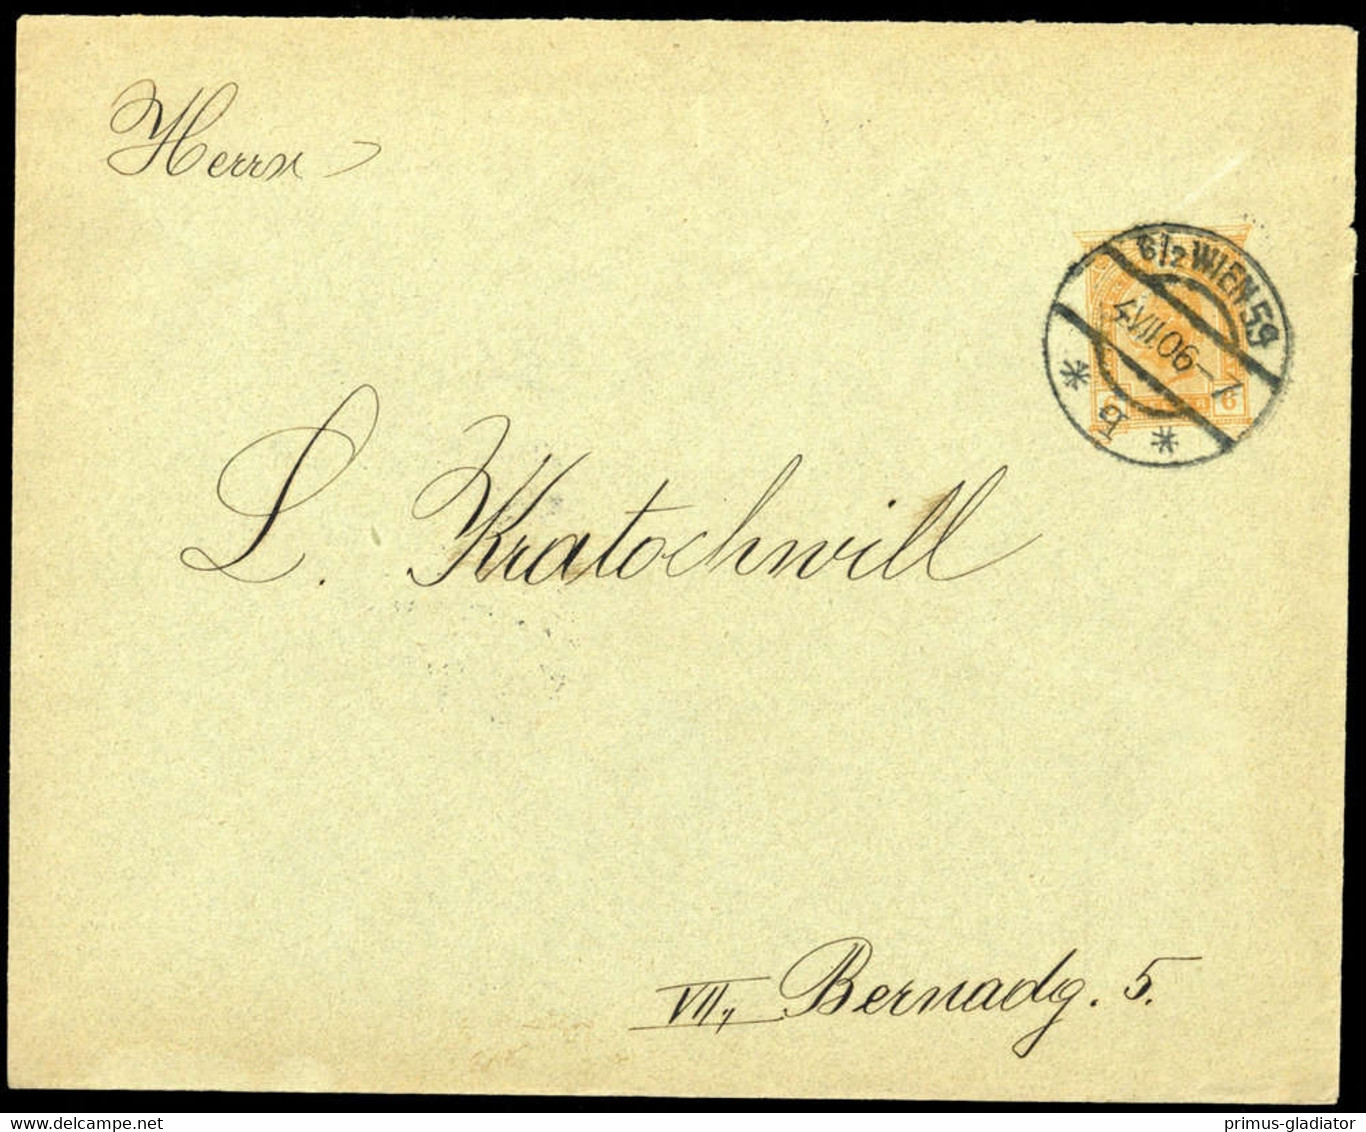 1906, Österreich, PU, Brief - Machine Postmarks